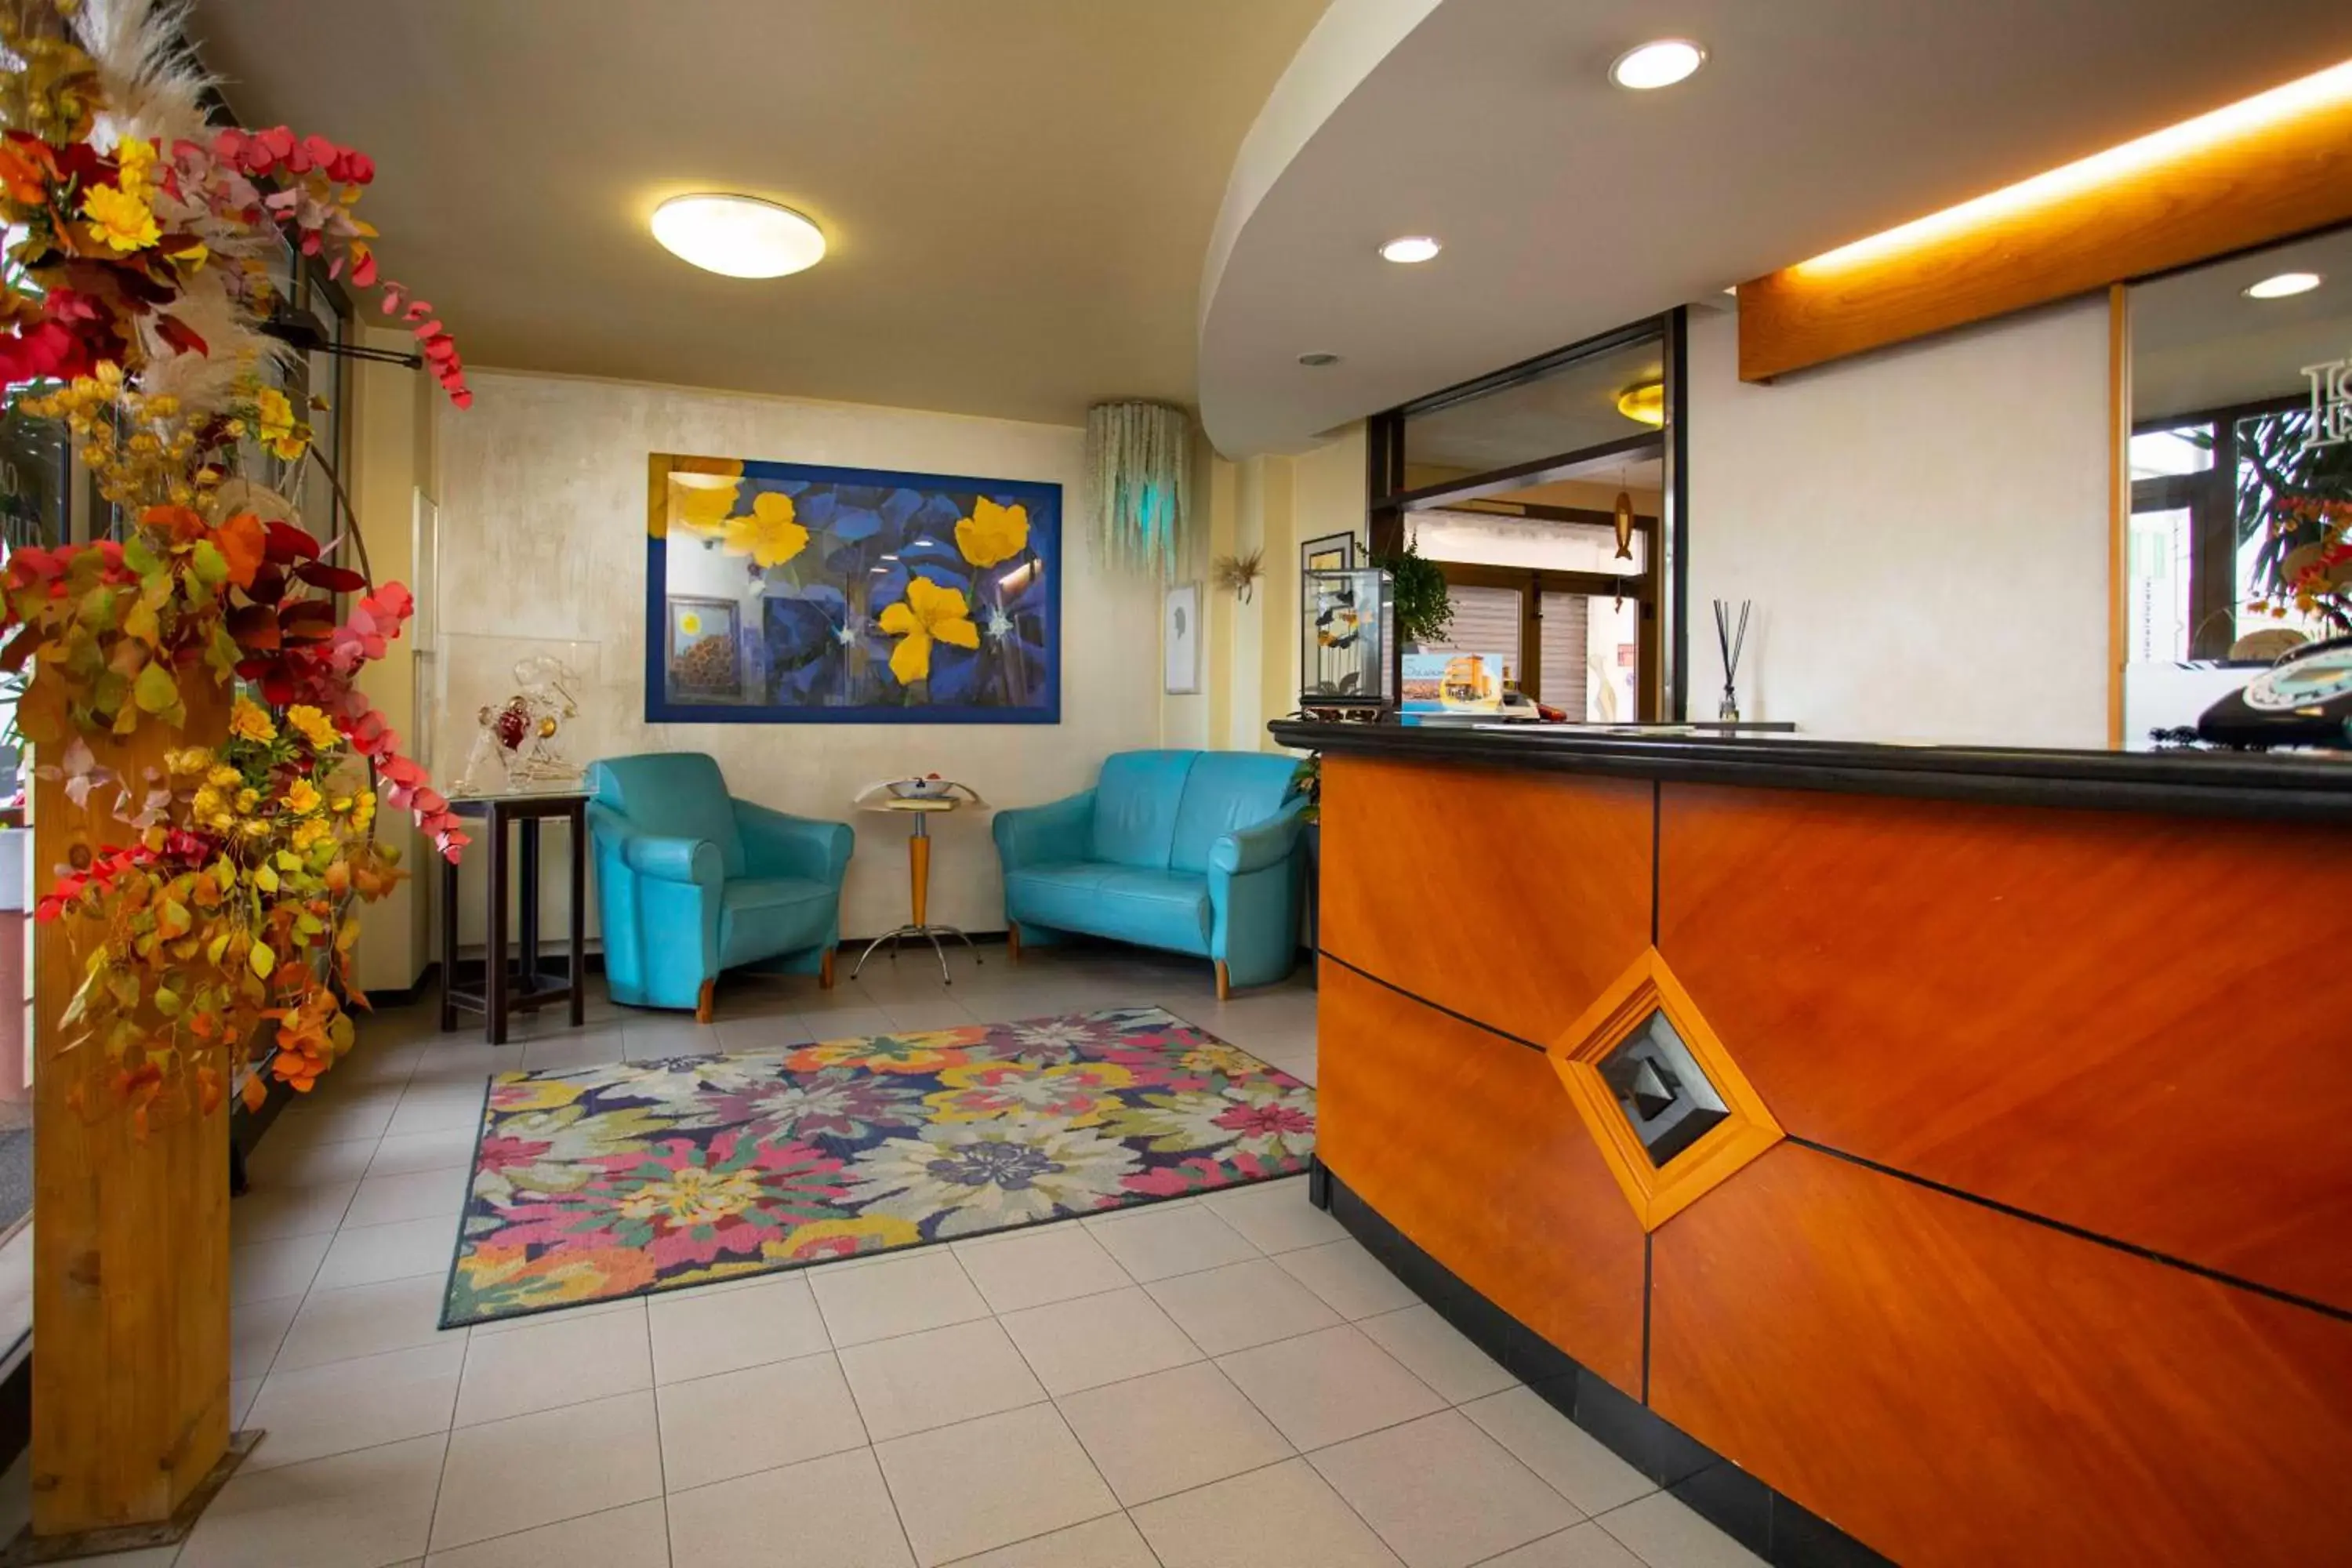 Lobby or reception, Lobby/Reception in Hotel Solarium